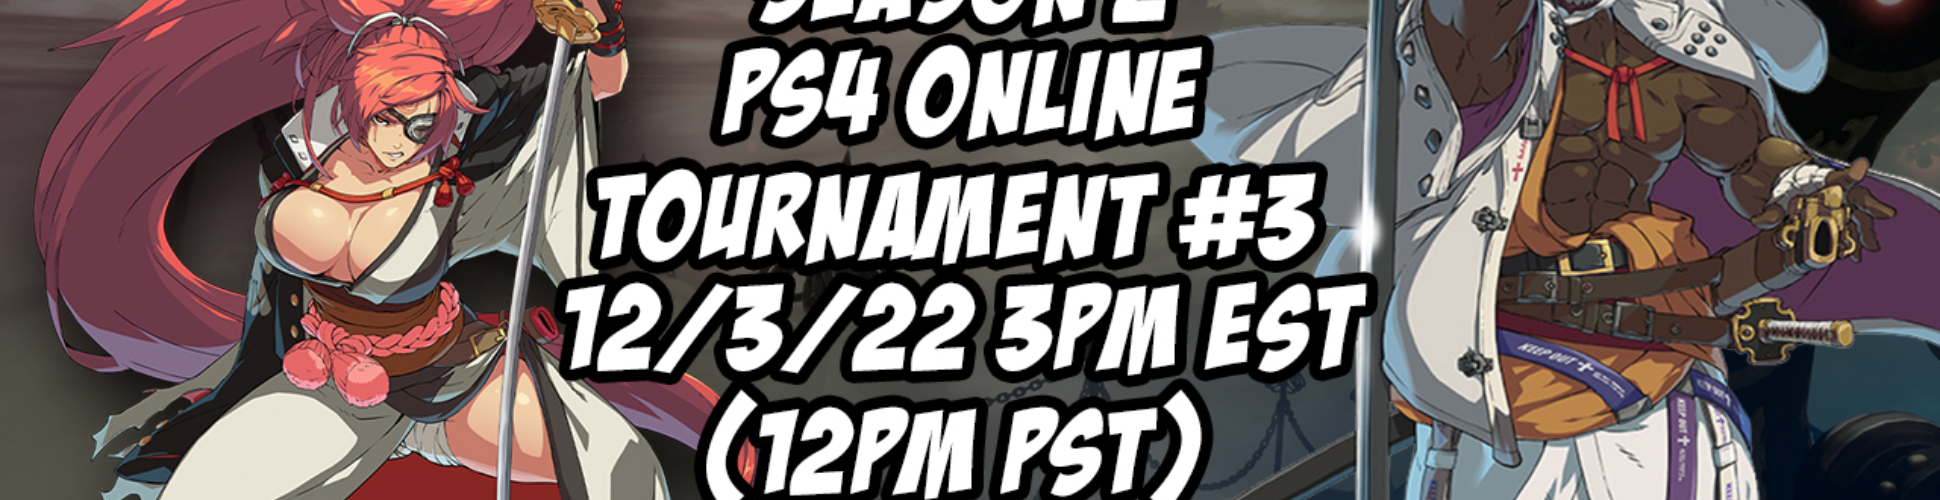 GG Strive Season 2 PS4 Online Tournament #3 12/3/22